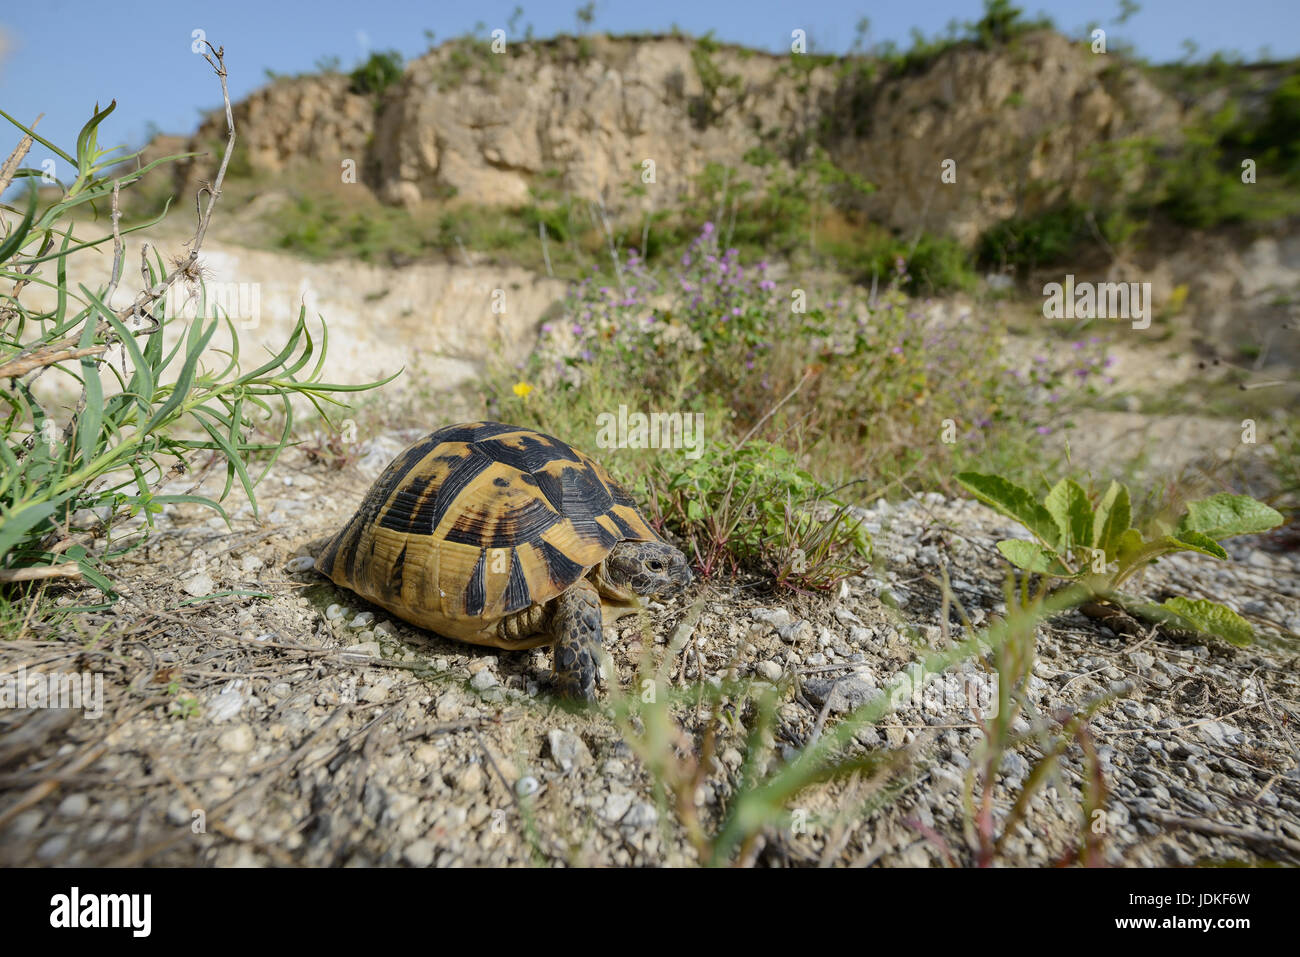 Maurische land tortoise sits on stony subsoil, Maurische Landschildkroete sitzt auf steinigem Untergrund Stock Photo